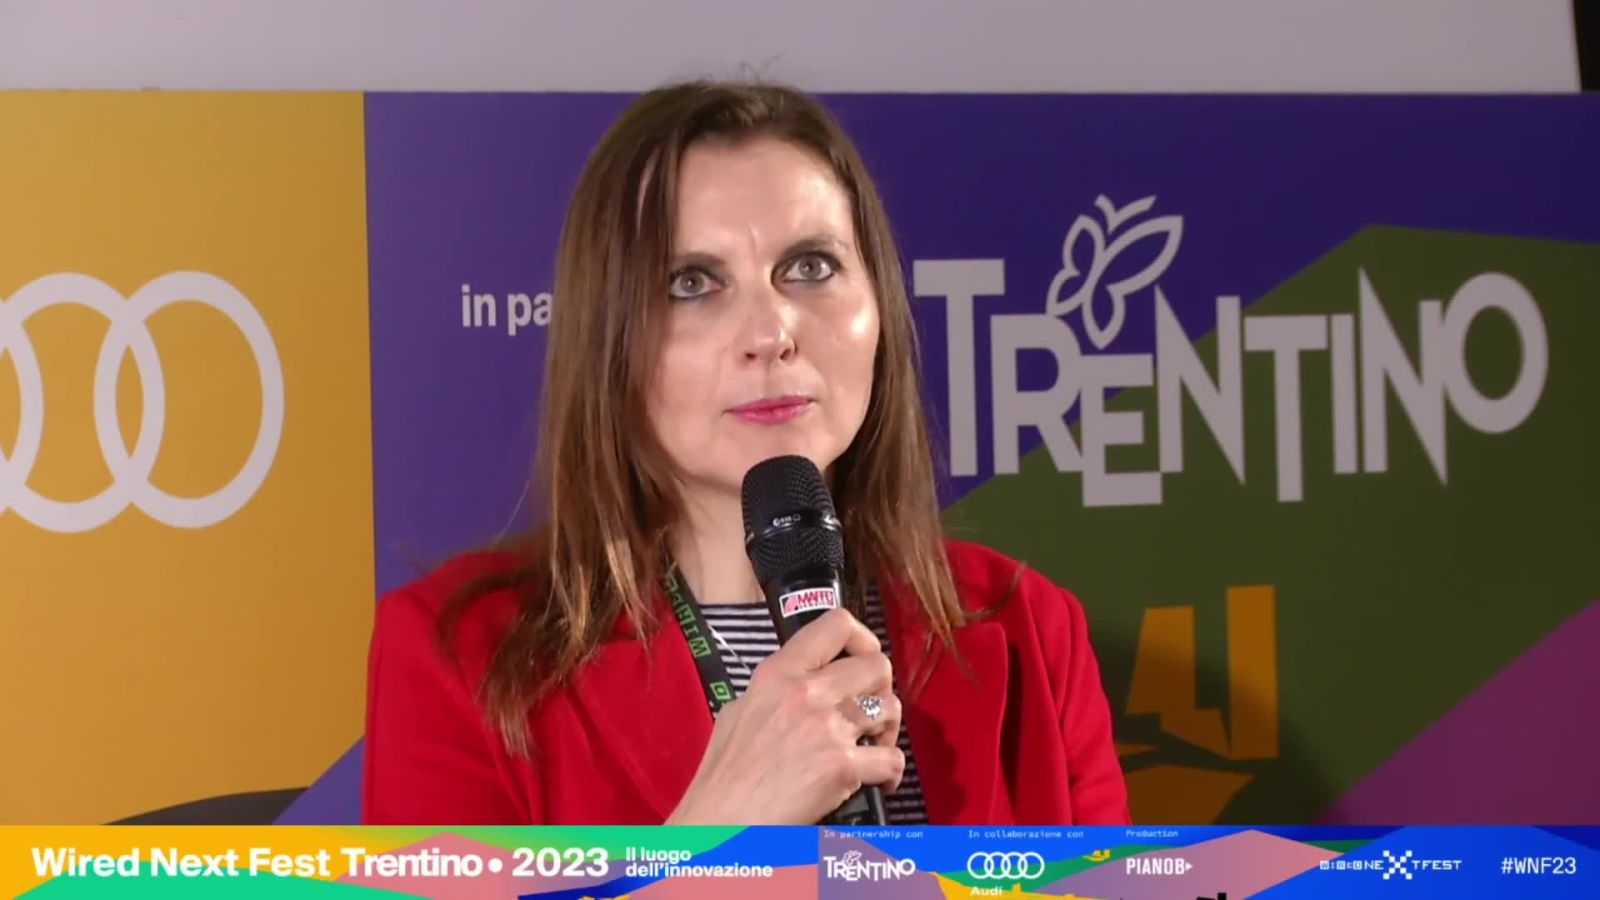 Francesca Cagnacci al Wired Next Fest 2023 Trentino: "Gli animali e tutti gli esseri viventi definiscono intorno a loro una determinata nicchia"